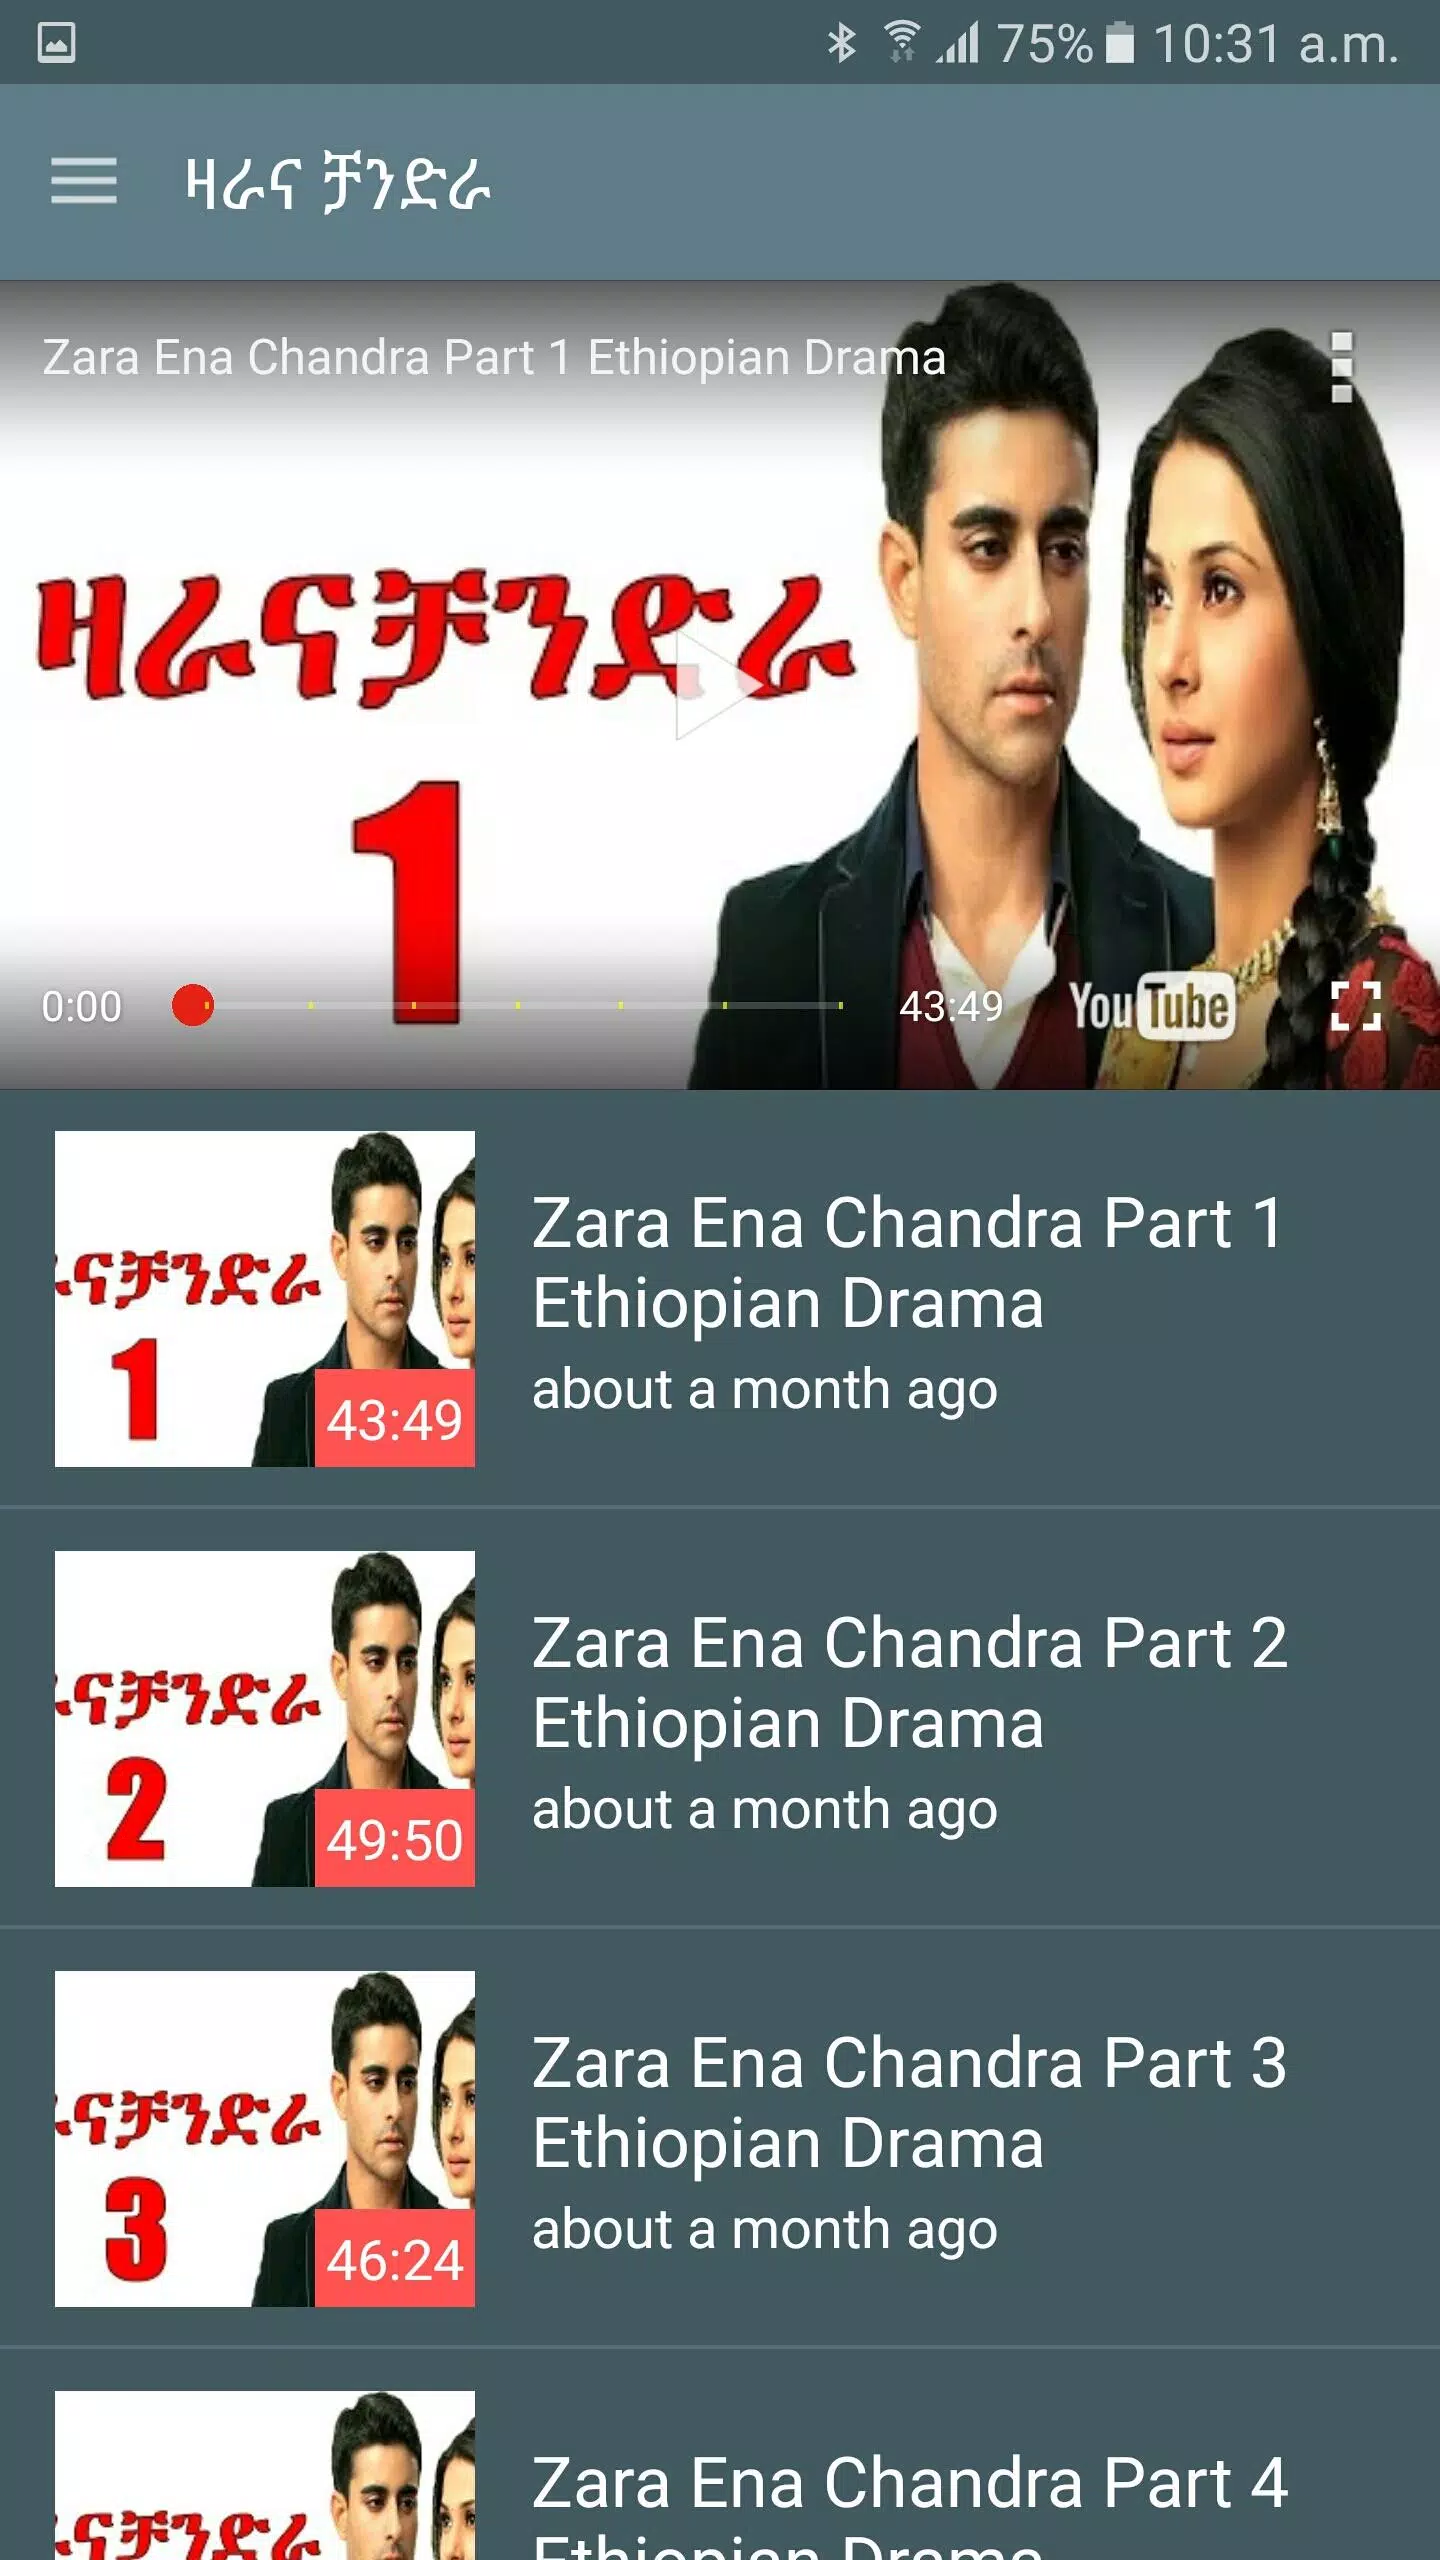 ቃና ቲቪ/Kana TV App for Android - APK Download